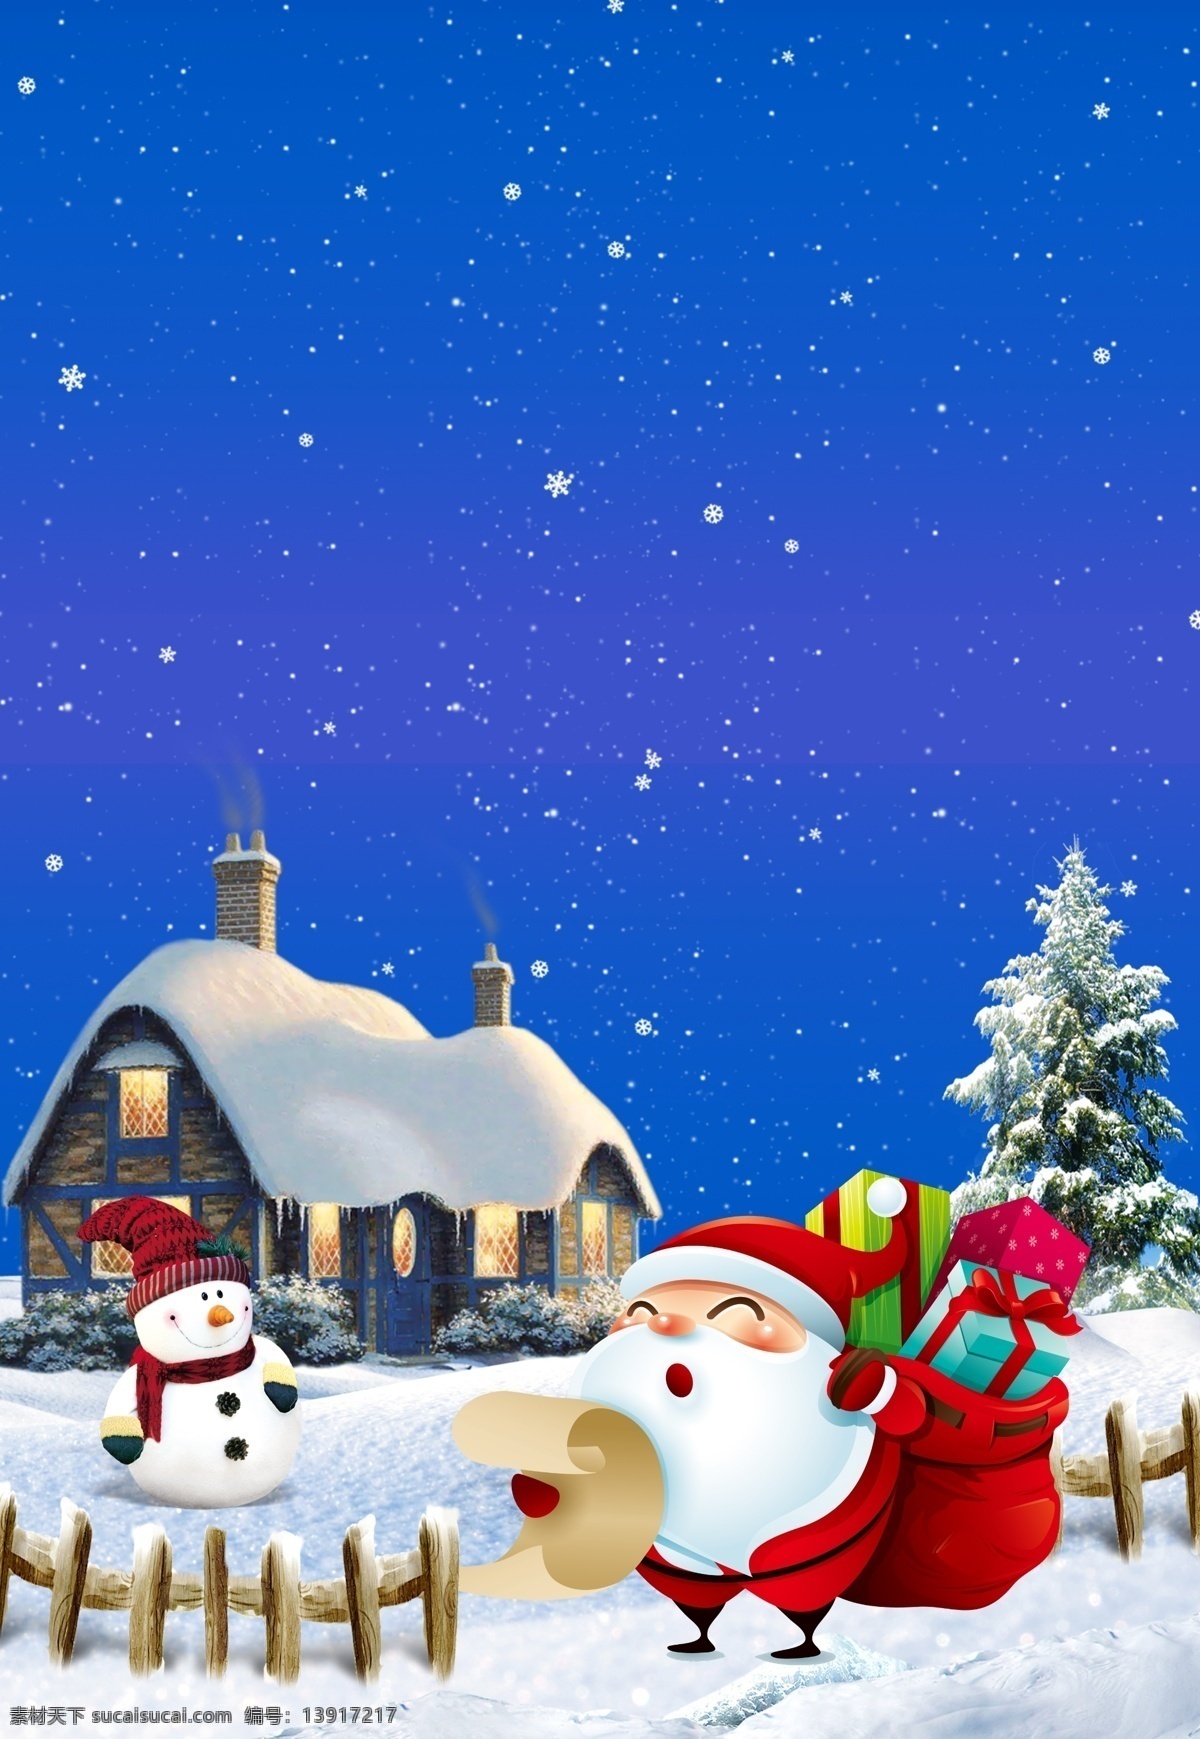 平安夜 蓝色 圣诞节 卡通 广告 背景 图 雪花 可爱 圣诞树 雪地 袜子 欢乐 扁平风 雪人 圣诞老人 卡通风 广告背景